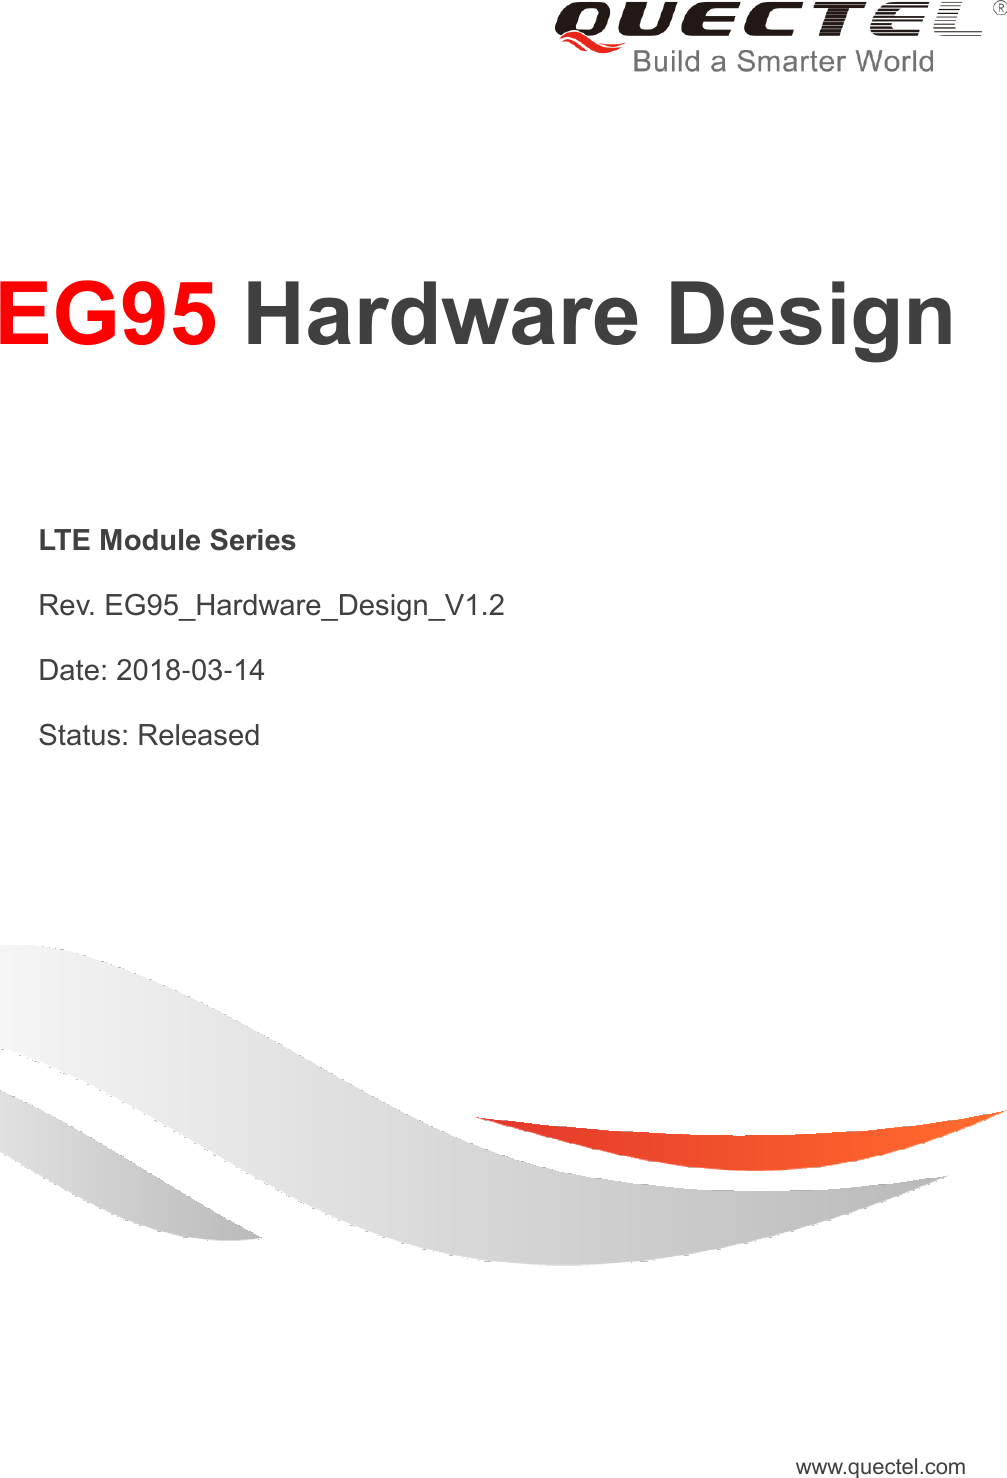     EG95 Hardware Design  LTE Module Series  Rev. EG95_Hardware_Design_V1.2  Date: 2018-03-14  Status: Released www.quectel.com